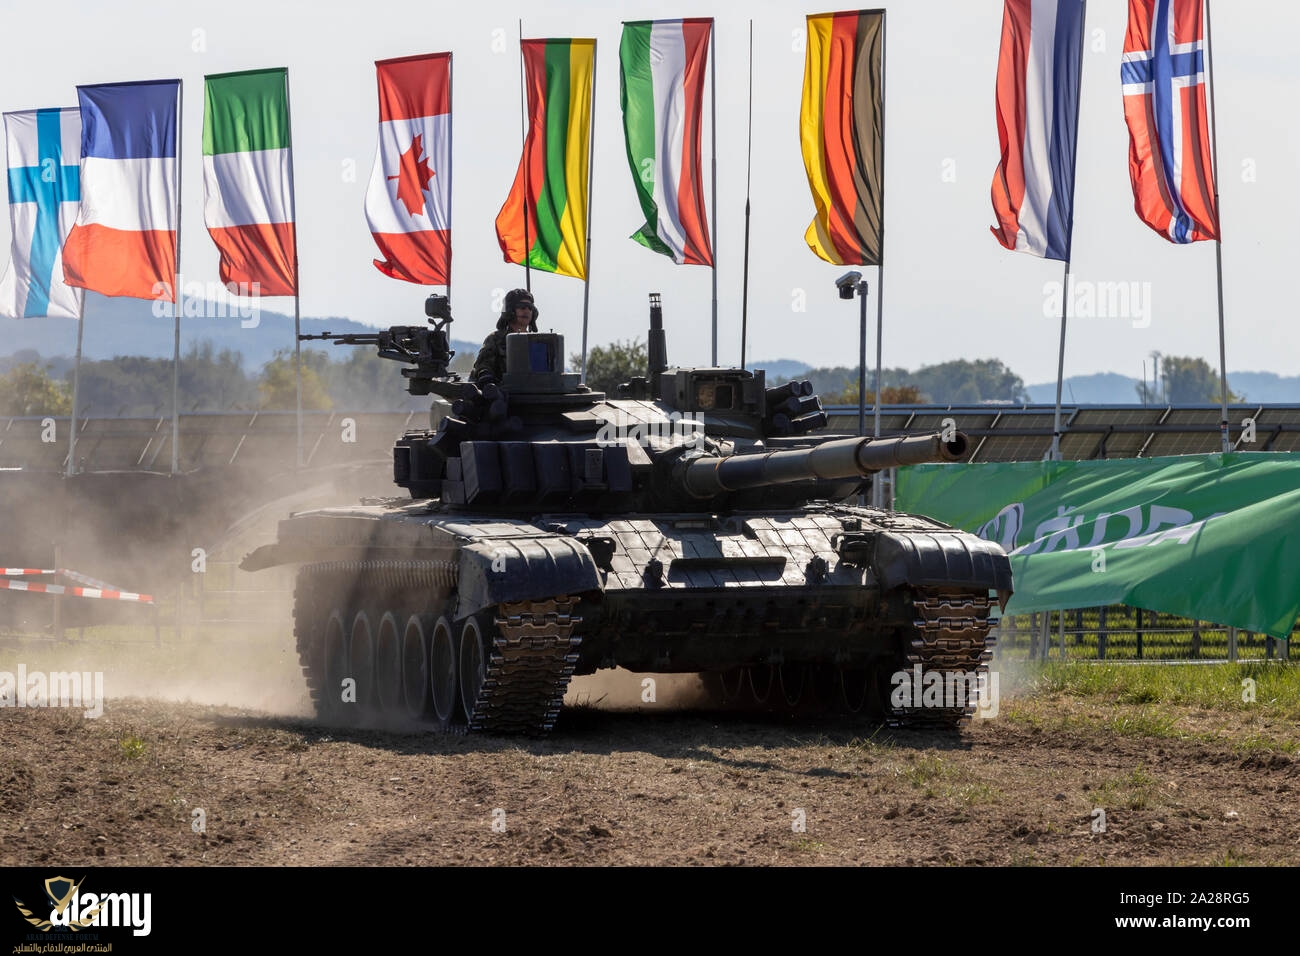 ostrava-czech-republic-september-22-2019-nato-days-old-russian-t-72-tank-of-the-czech-armed-fo...jpg